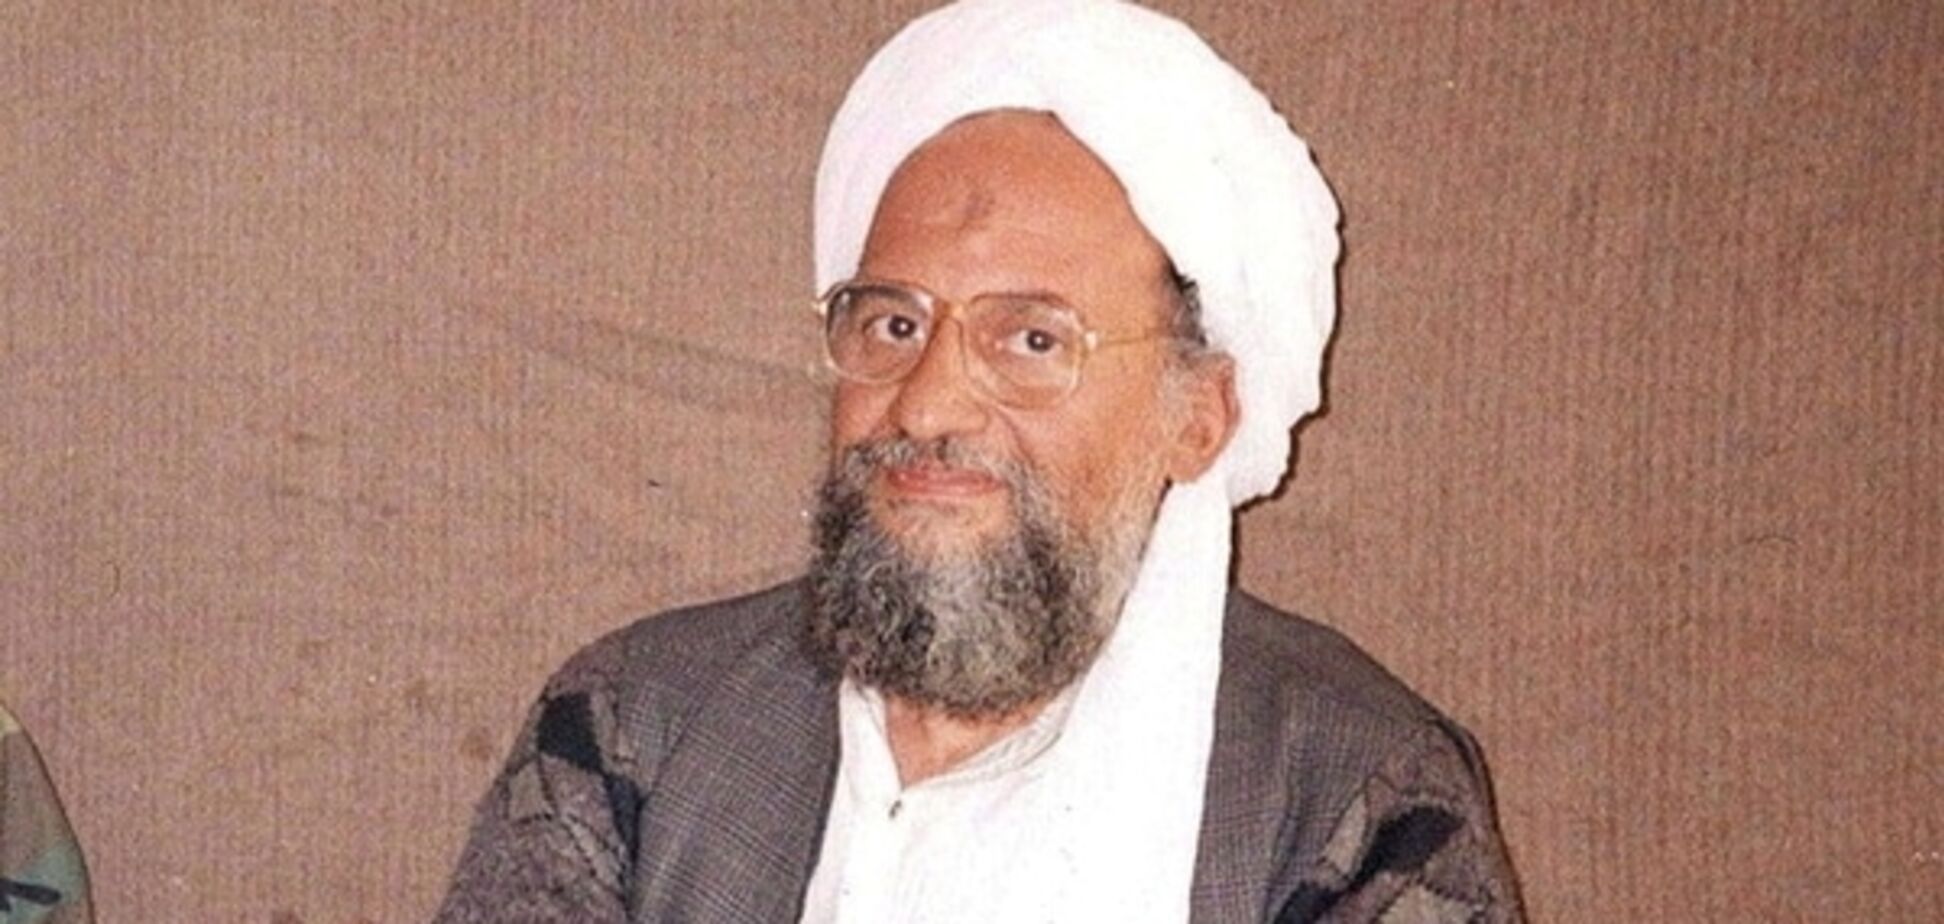 Аль-Каида призвала мусульман совершать теракты в странах Запада